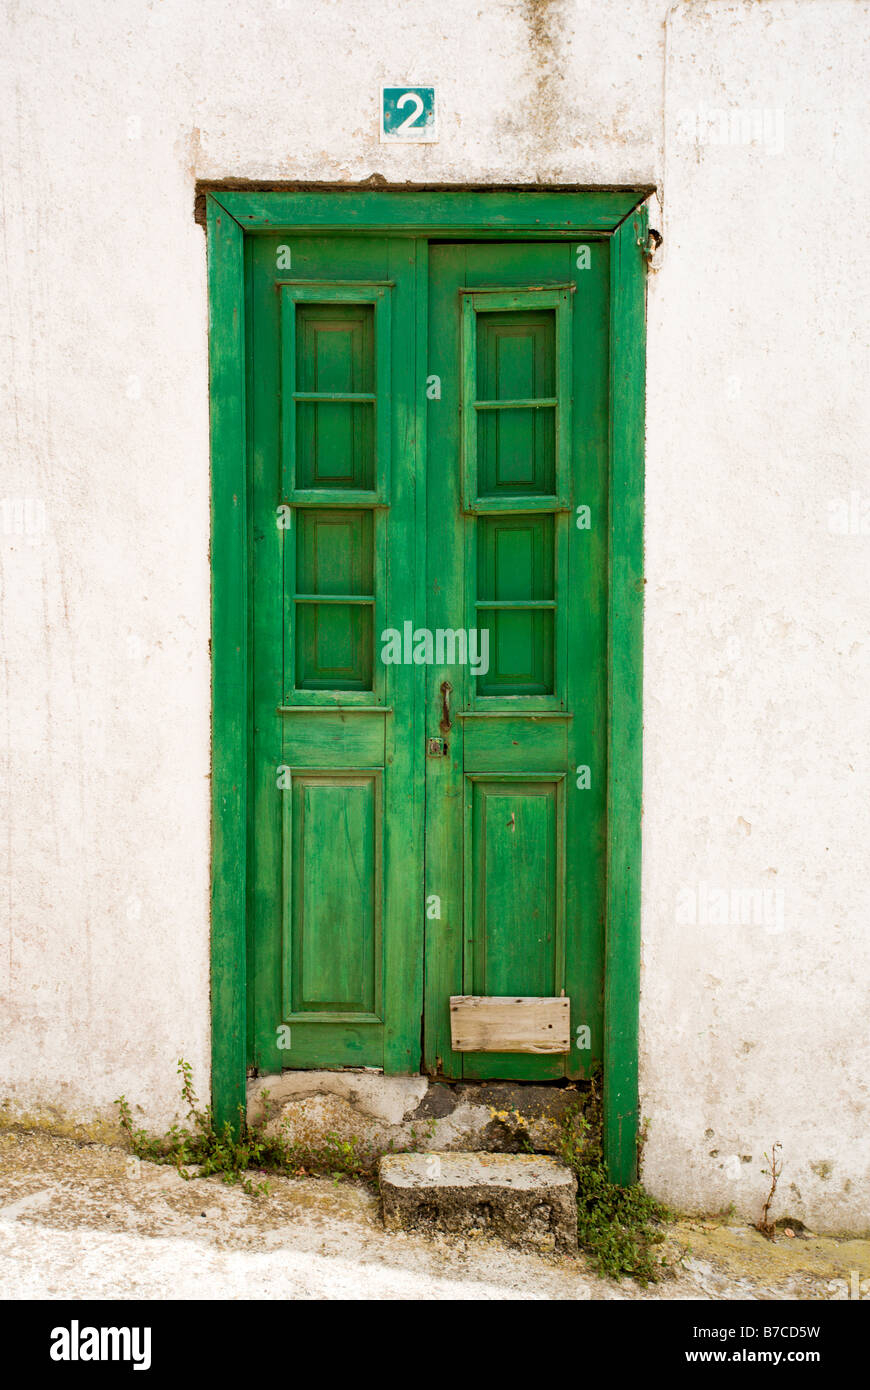 Vieille maison de bois vert avec porte d'entrée numéro 2, El Hierro, Îles Canaries Banque D'Images